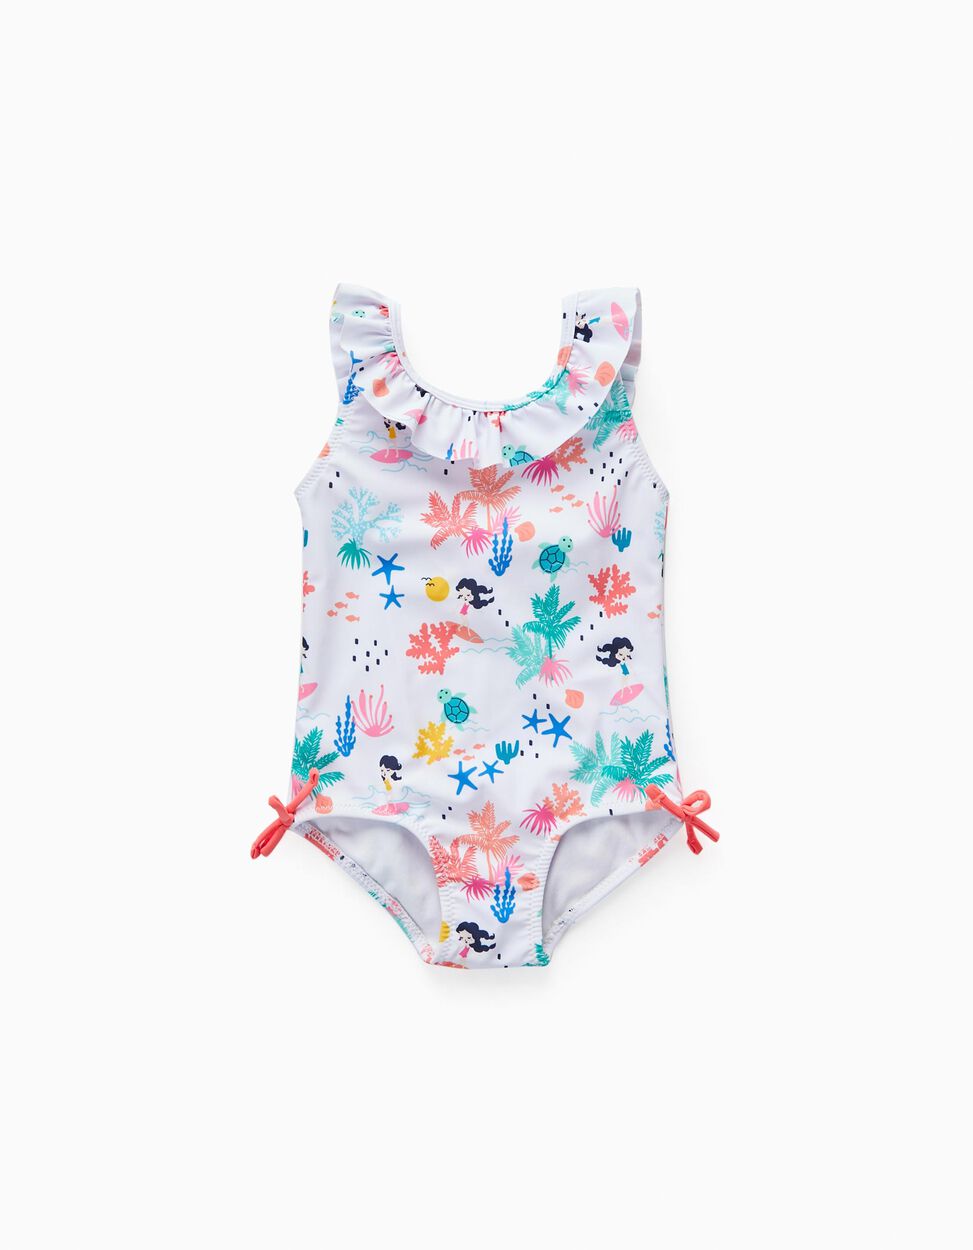 Zippy Swimsuit Upf 80 For Baby Girls 'The Beach', White